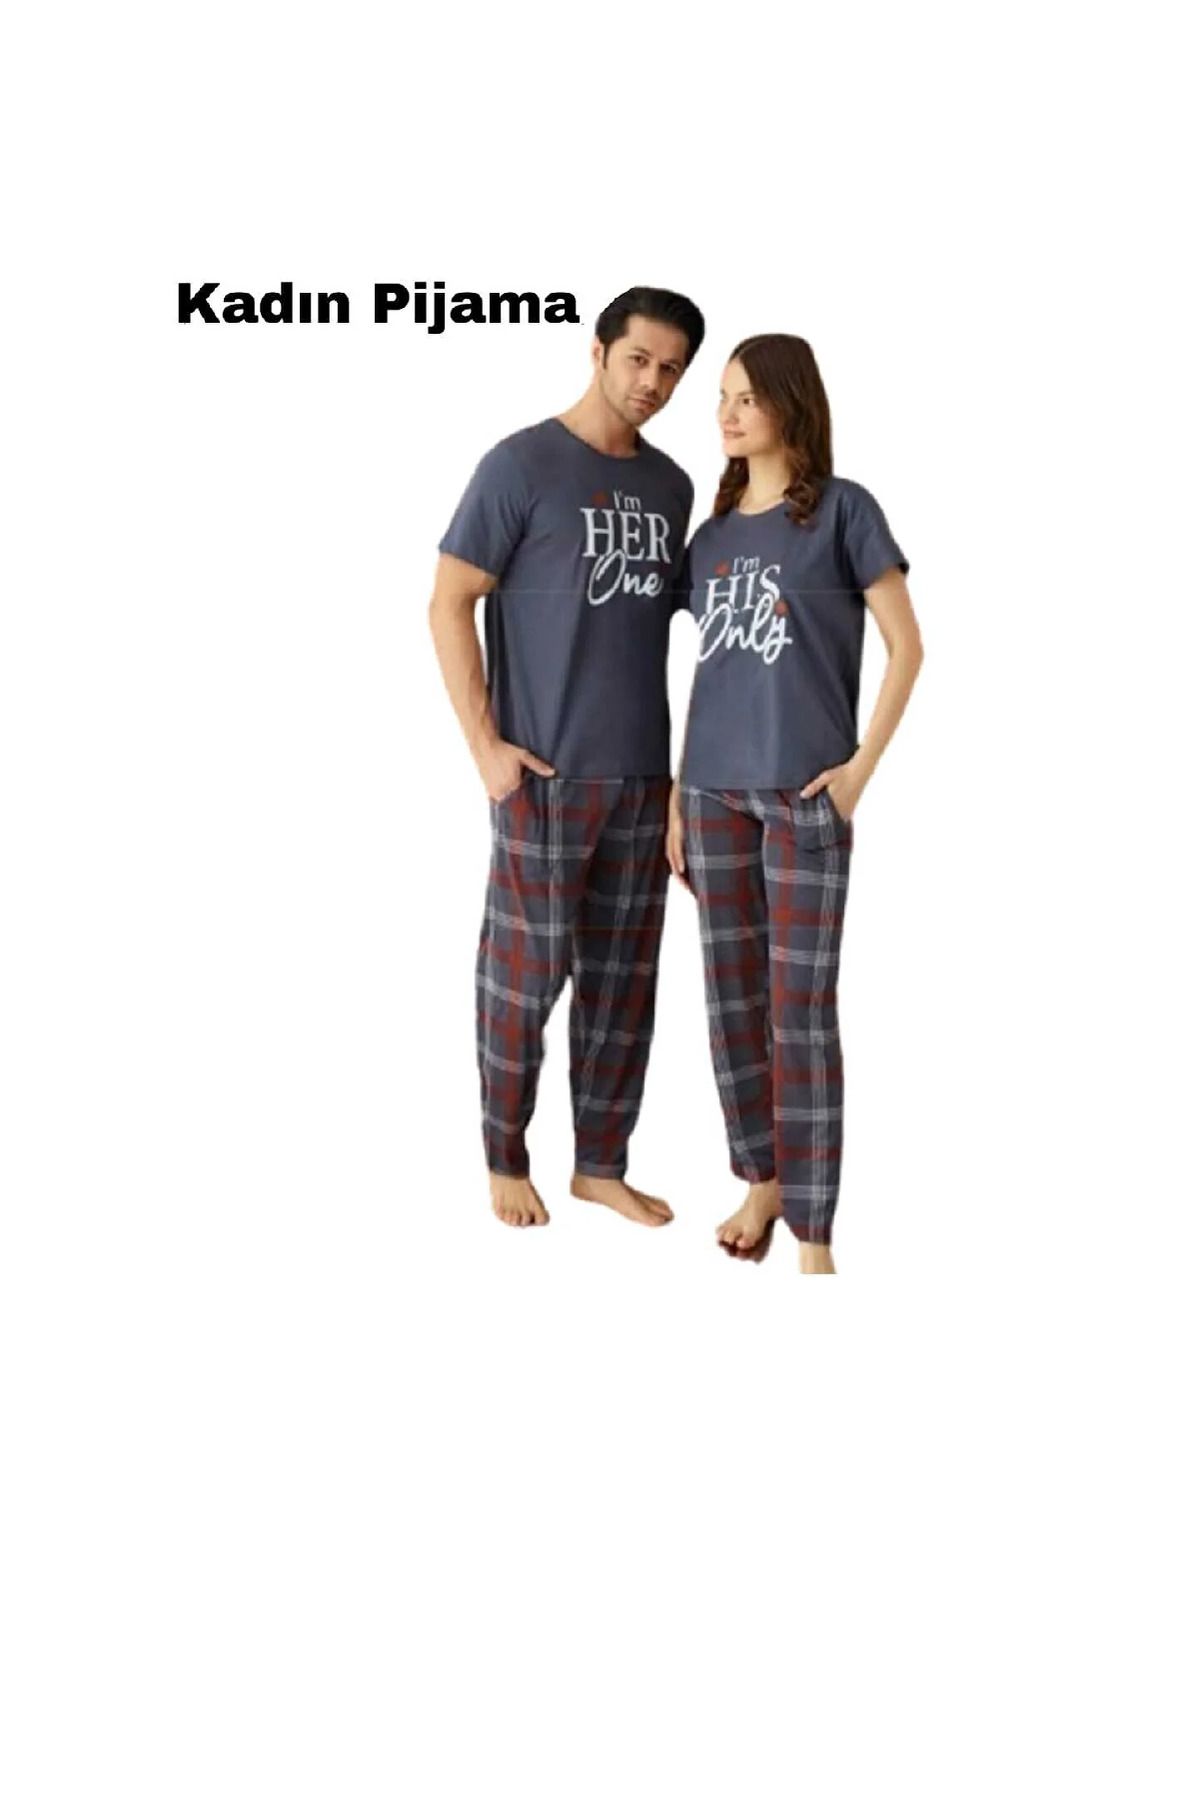 Pijamoni Eşli Kısa Kol Pijama Takım(Kadın ve Erkek için ayrı ayrı satılmaktadır)